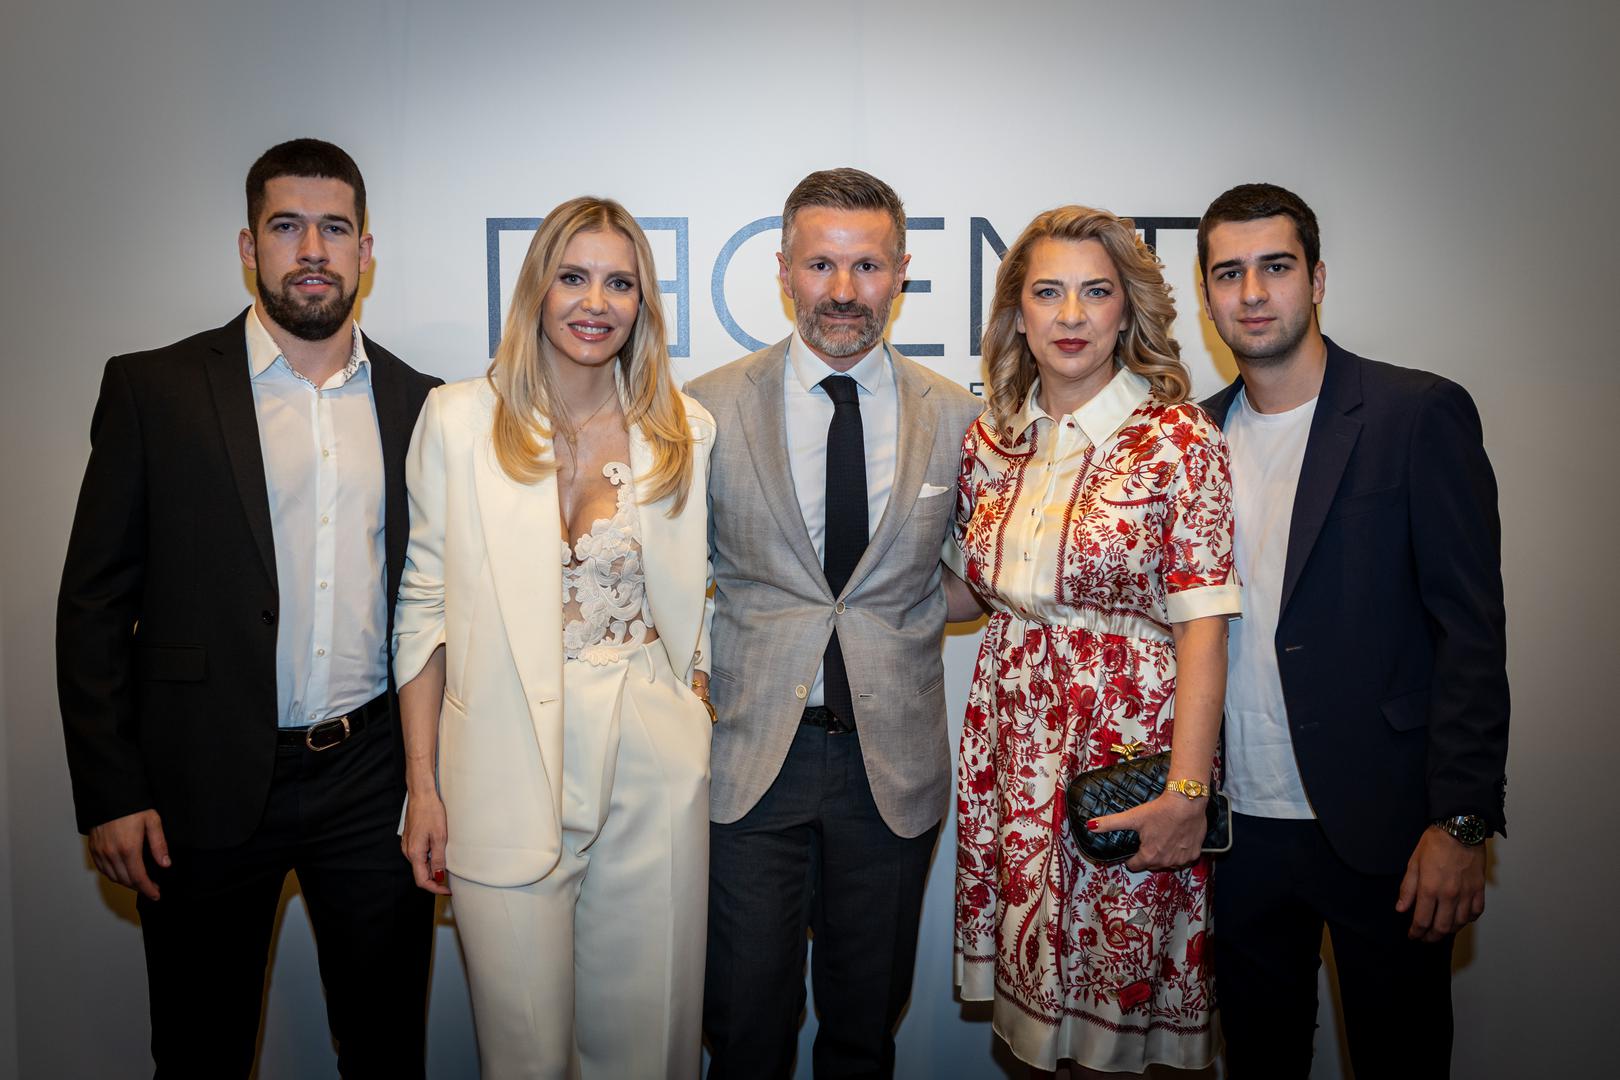 Na gala prijemu, održanom u Beogradu, Ante Todorić, zajedno s partnericom Petrom Kaćunko, predstavio je svoju Real Estate agenciju 'Regent', koja već godinu dana uspješno posluje, za sada, isključivo u Hrvatskoj.